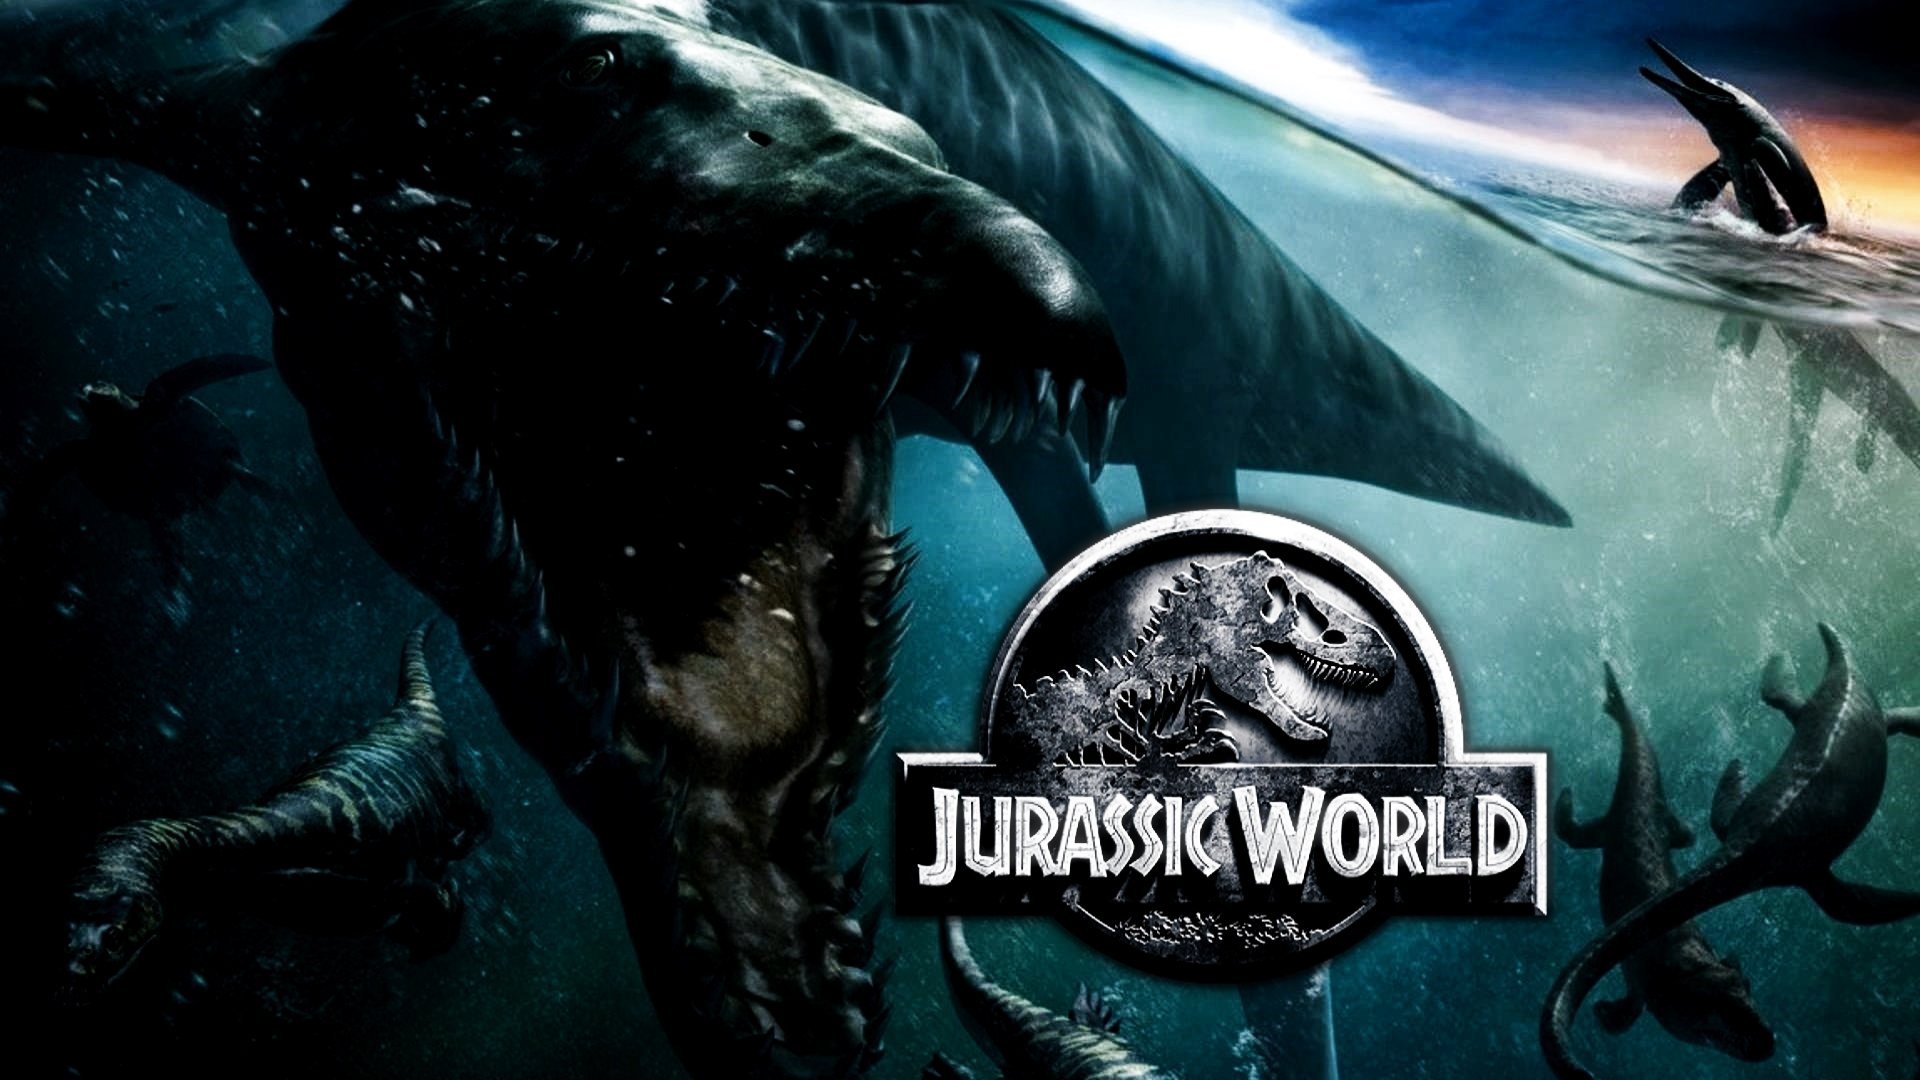 Jurassic World Full HD Fond D Cran And Arri Re Plan